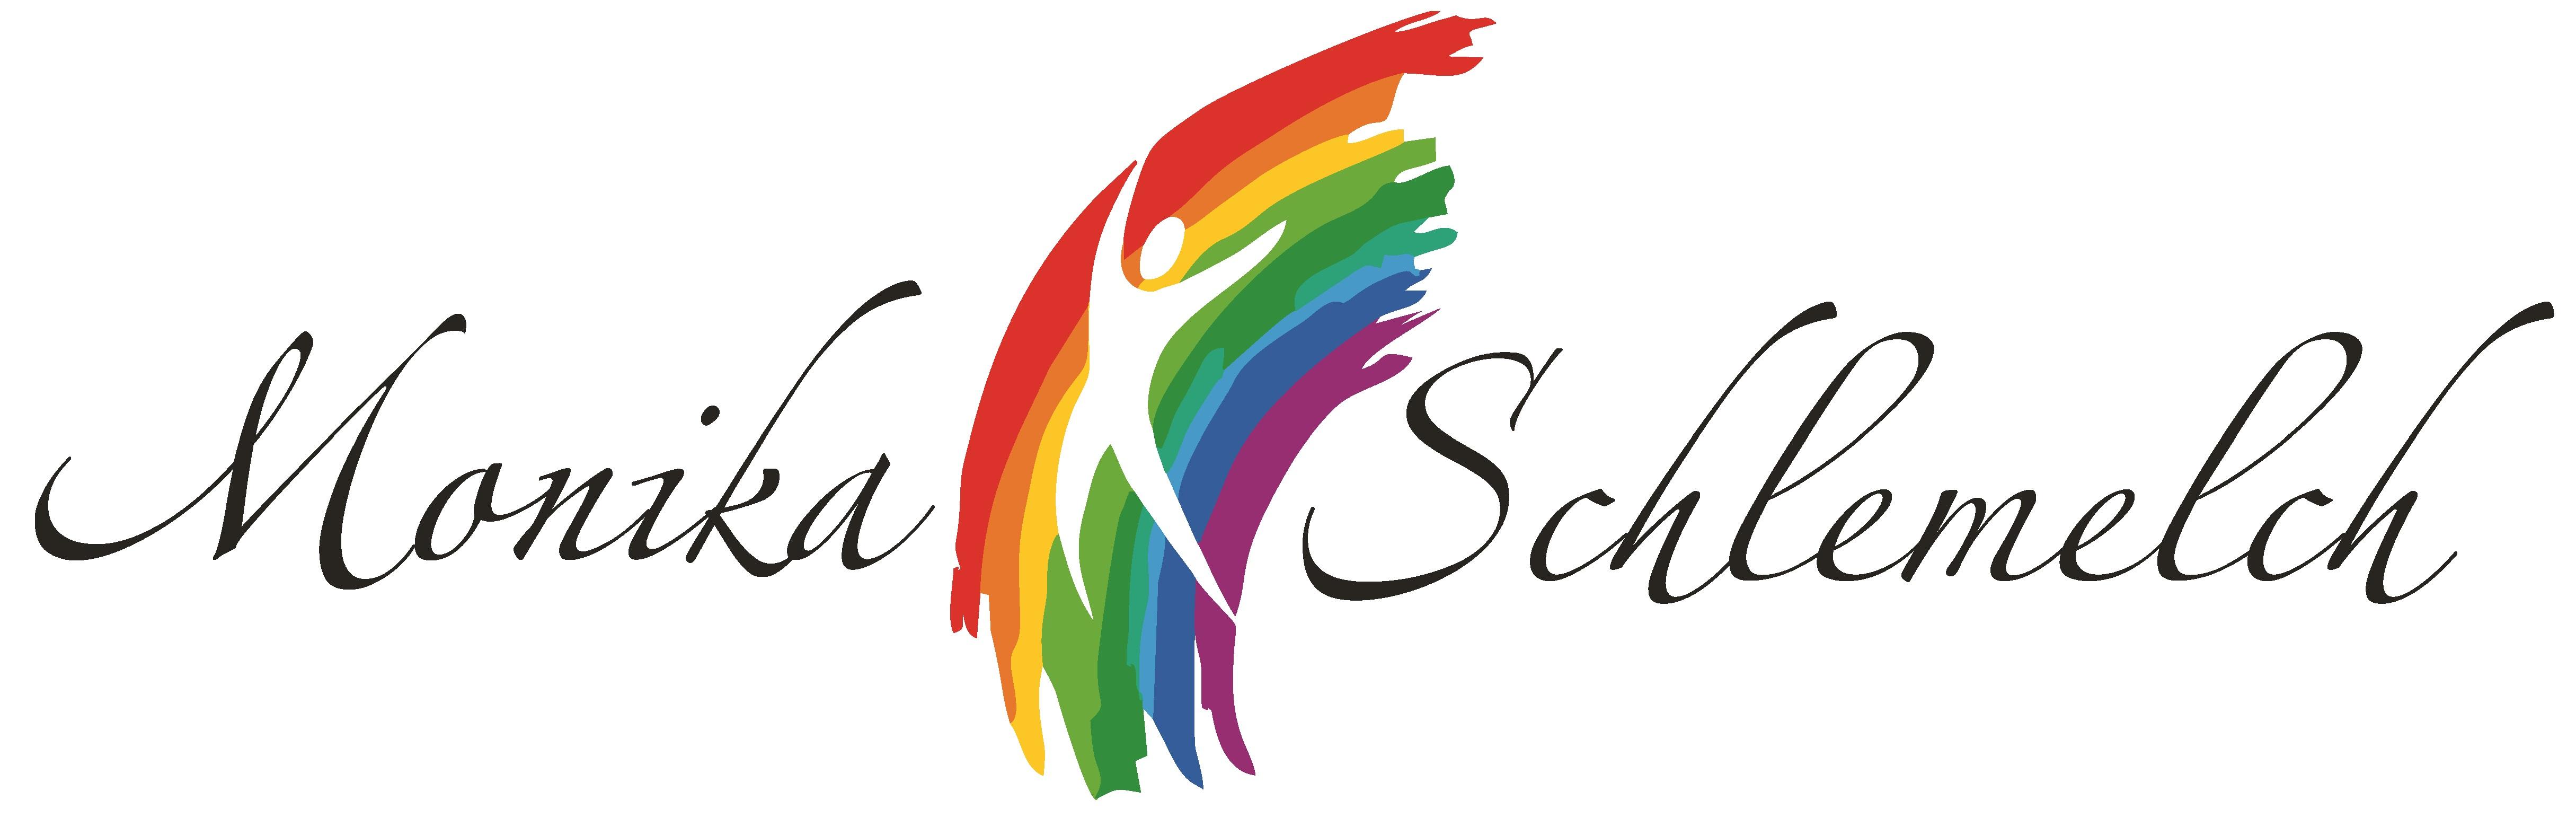 logo-monika-schlemelch